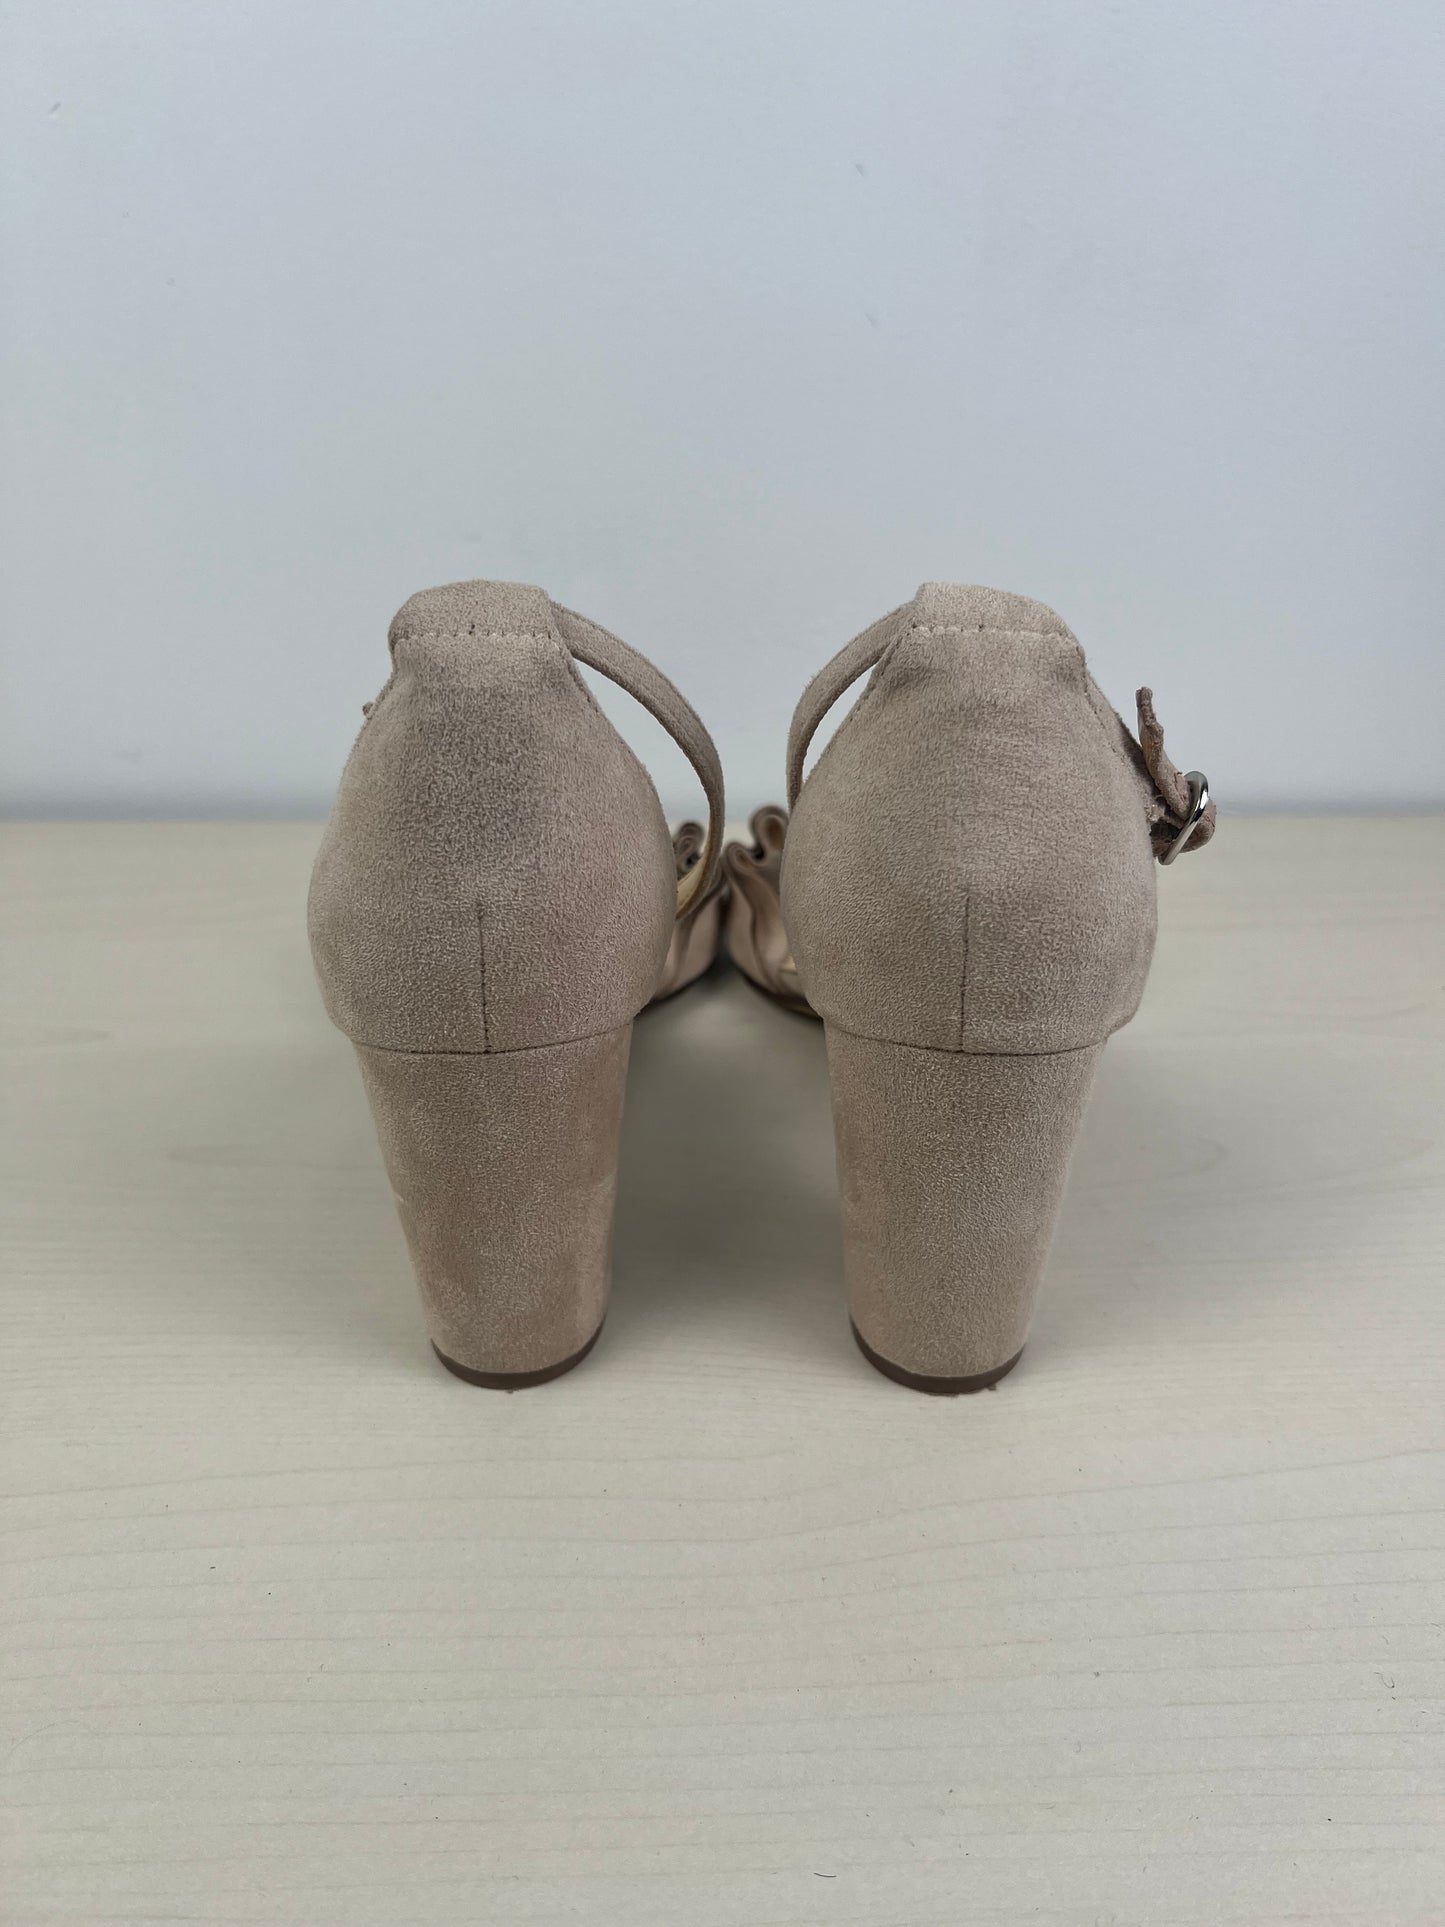 Sandals Heels Block By Unisa  Size: 9